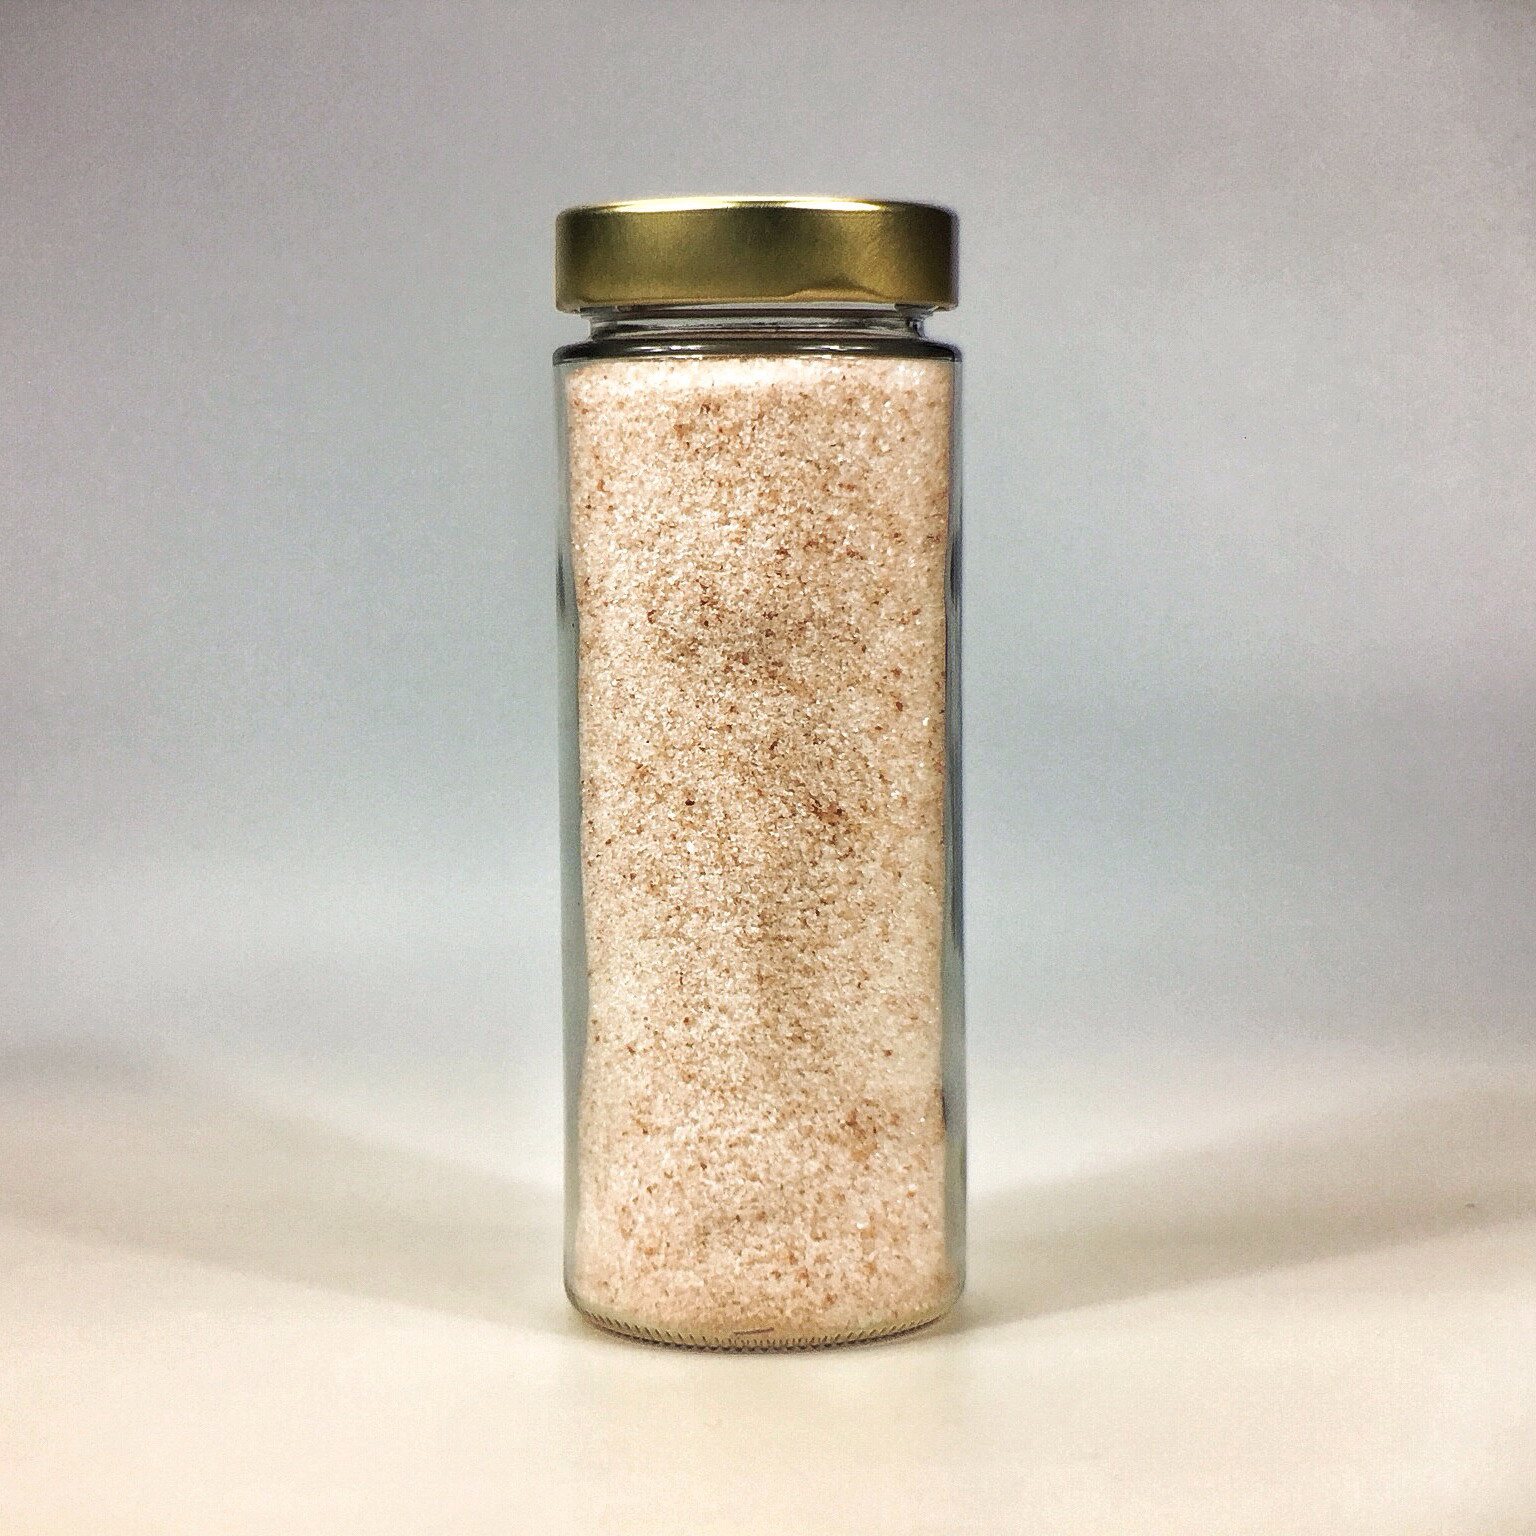 Himalaya Salz fein gemahlen für Salzstreuer im grossen Glas mit Golddeckel